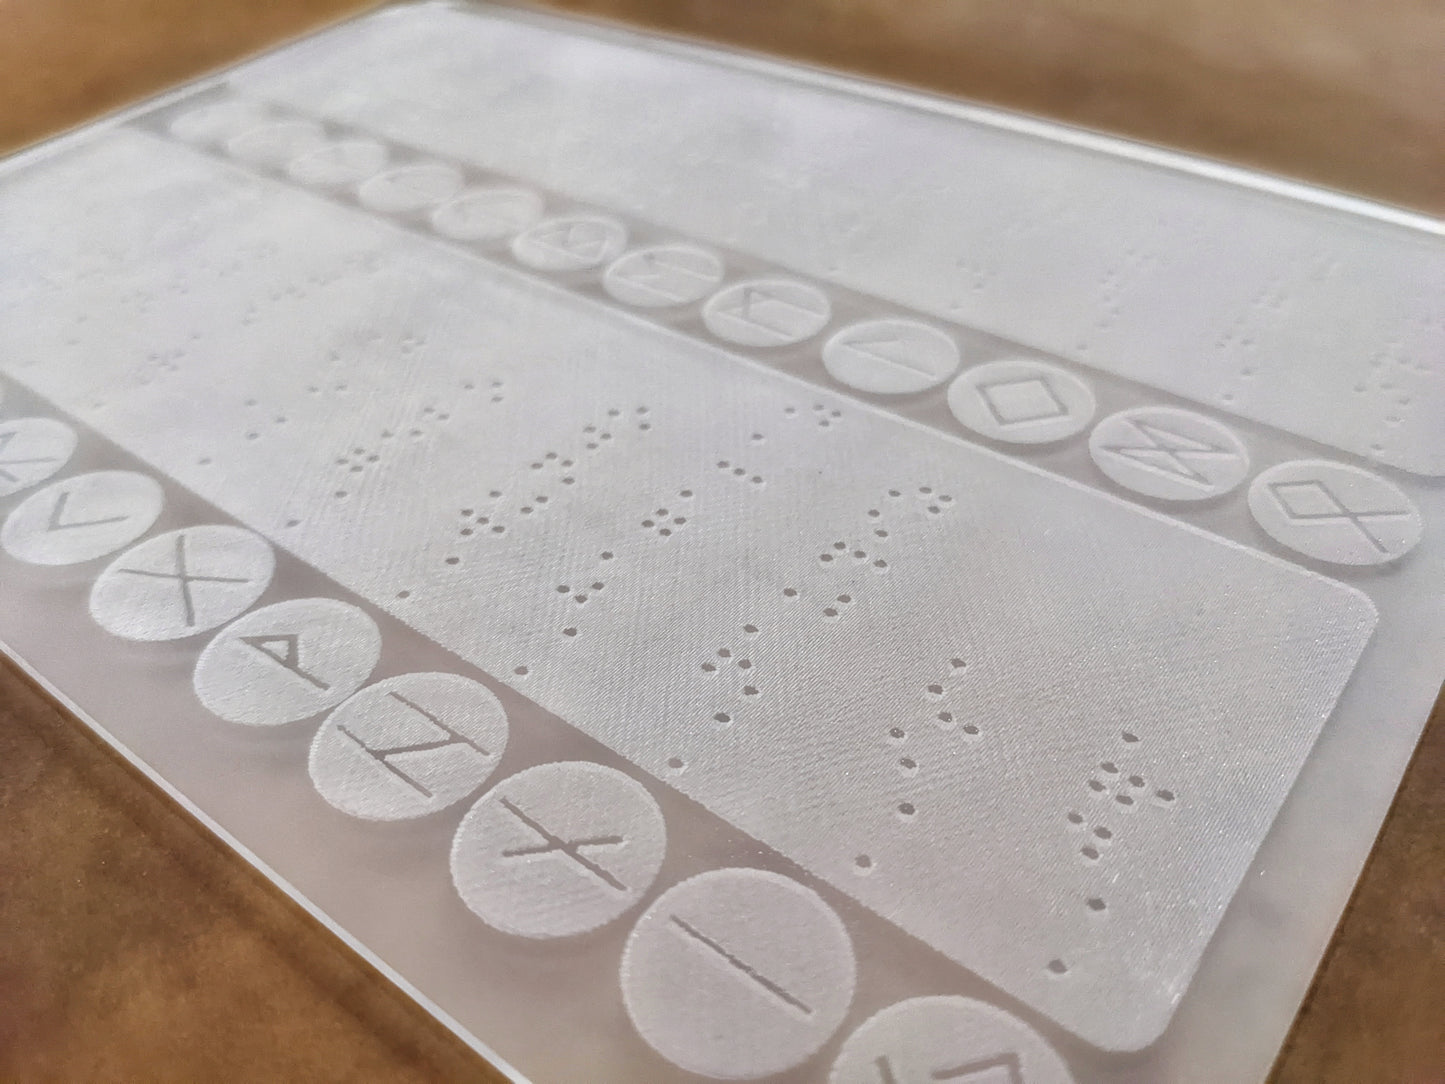 Elder Futhark Braille Rune Board For Blind or Visually Impaired | Tactile Rune Guide